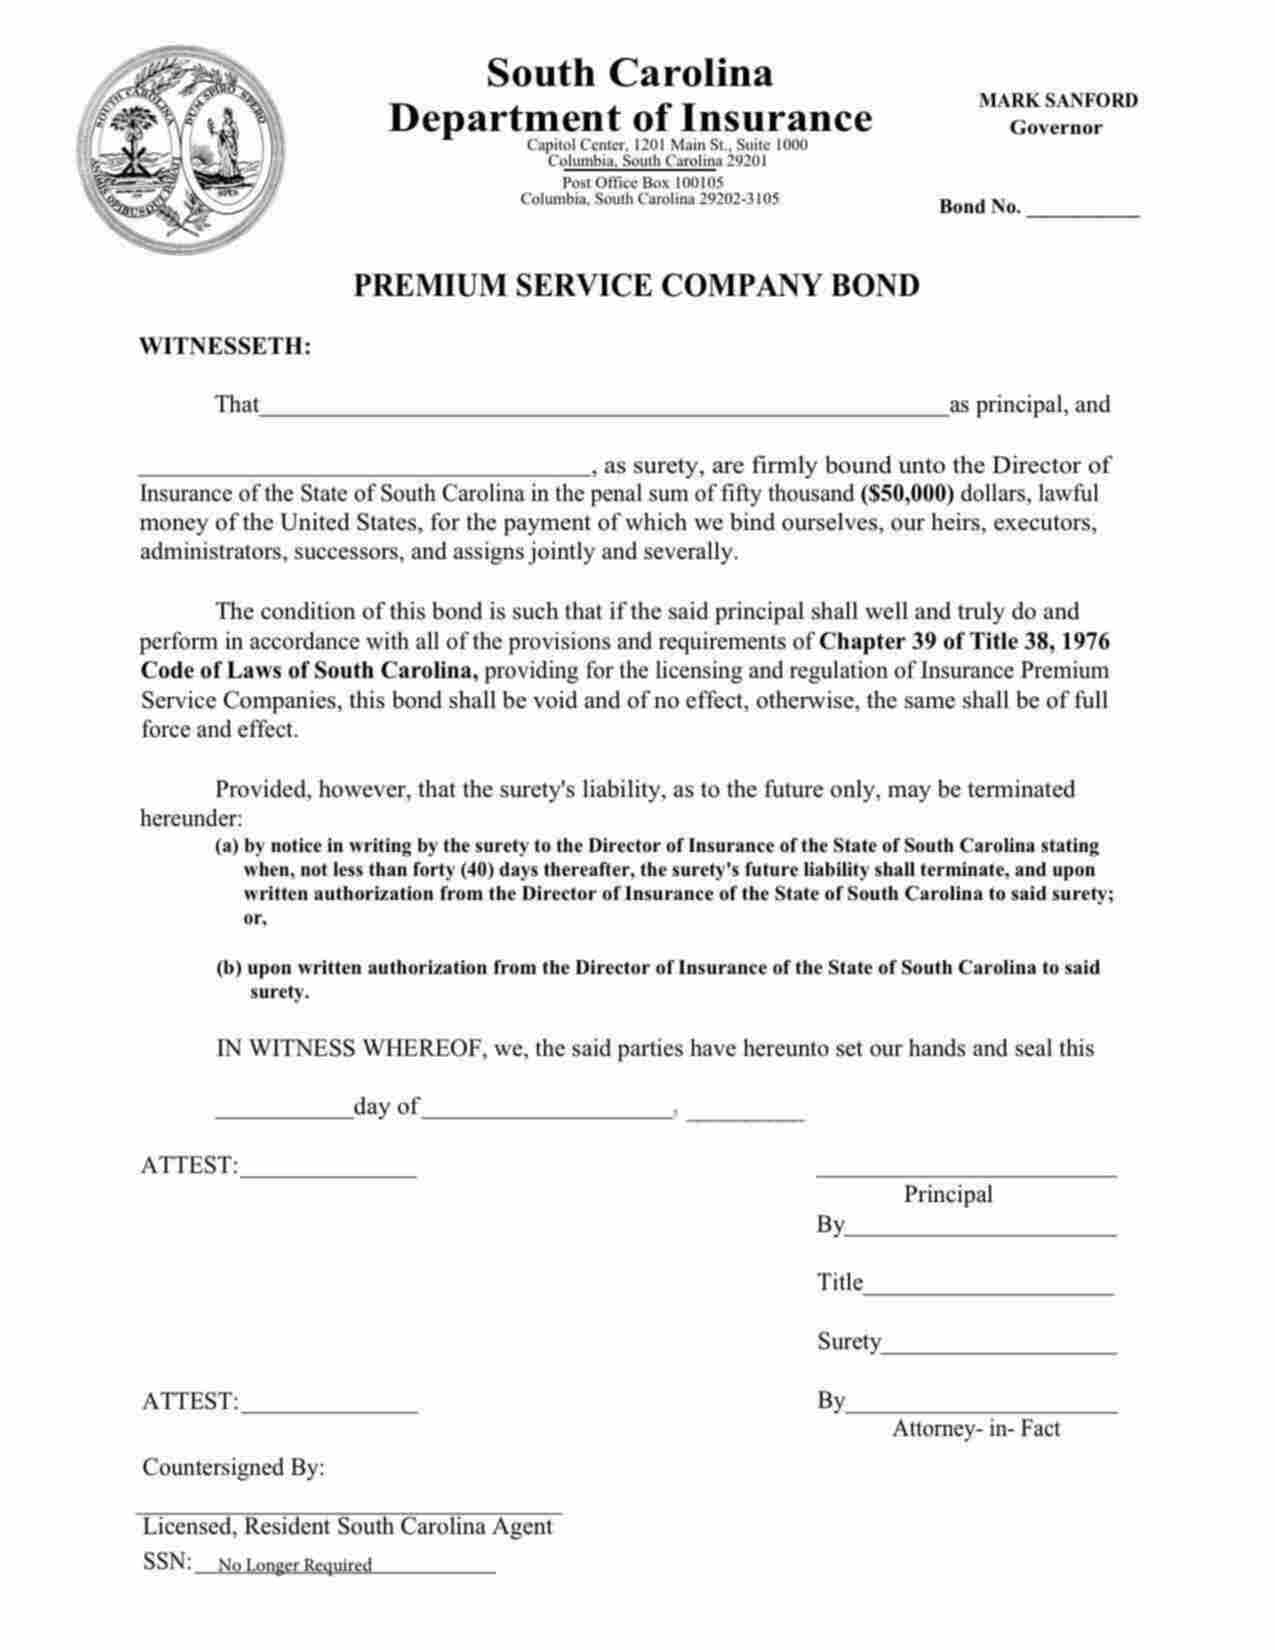 South Carolina Premium Service Company Bond Form